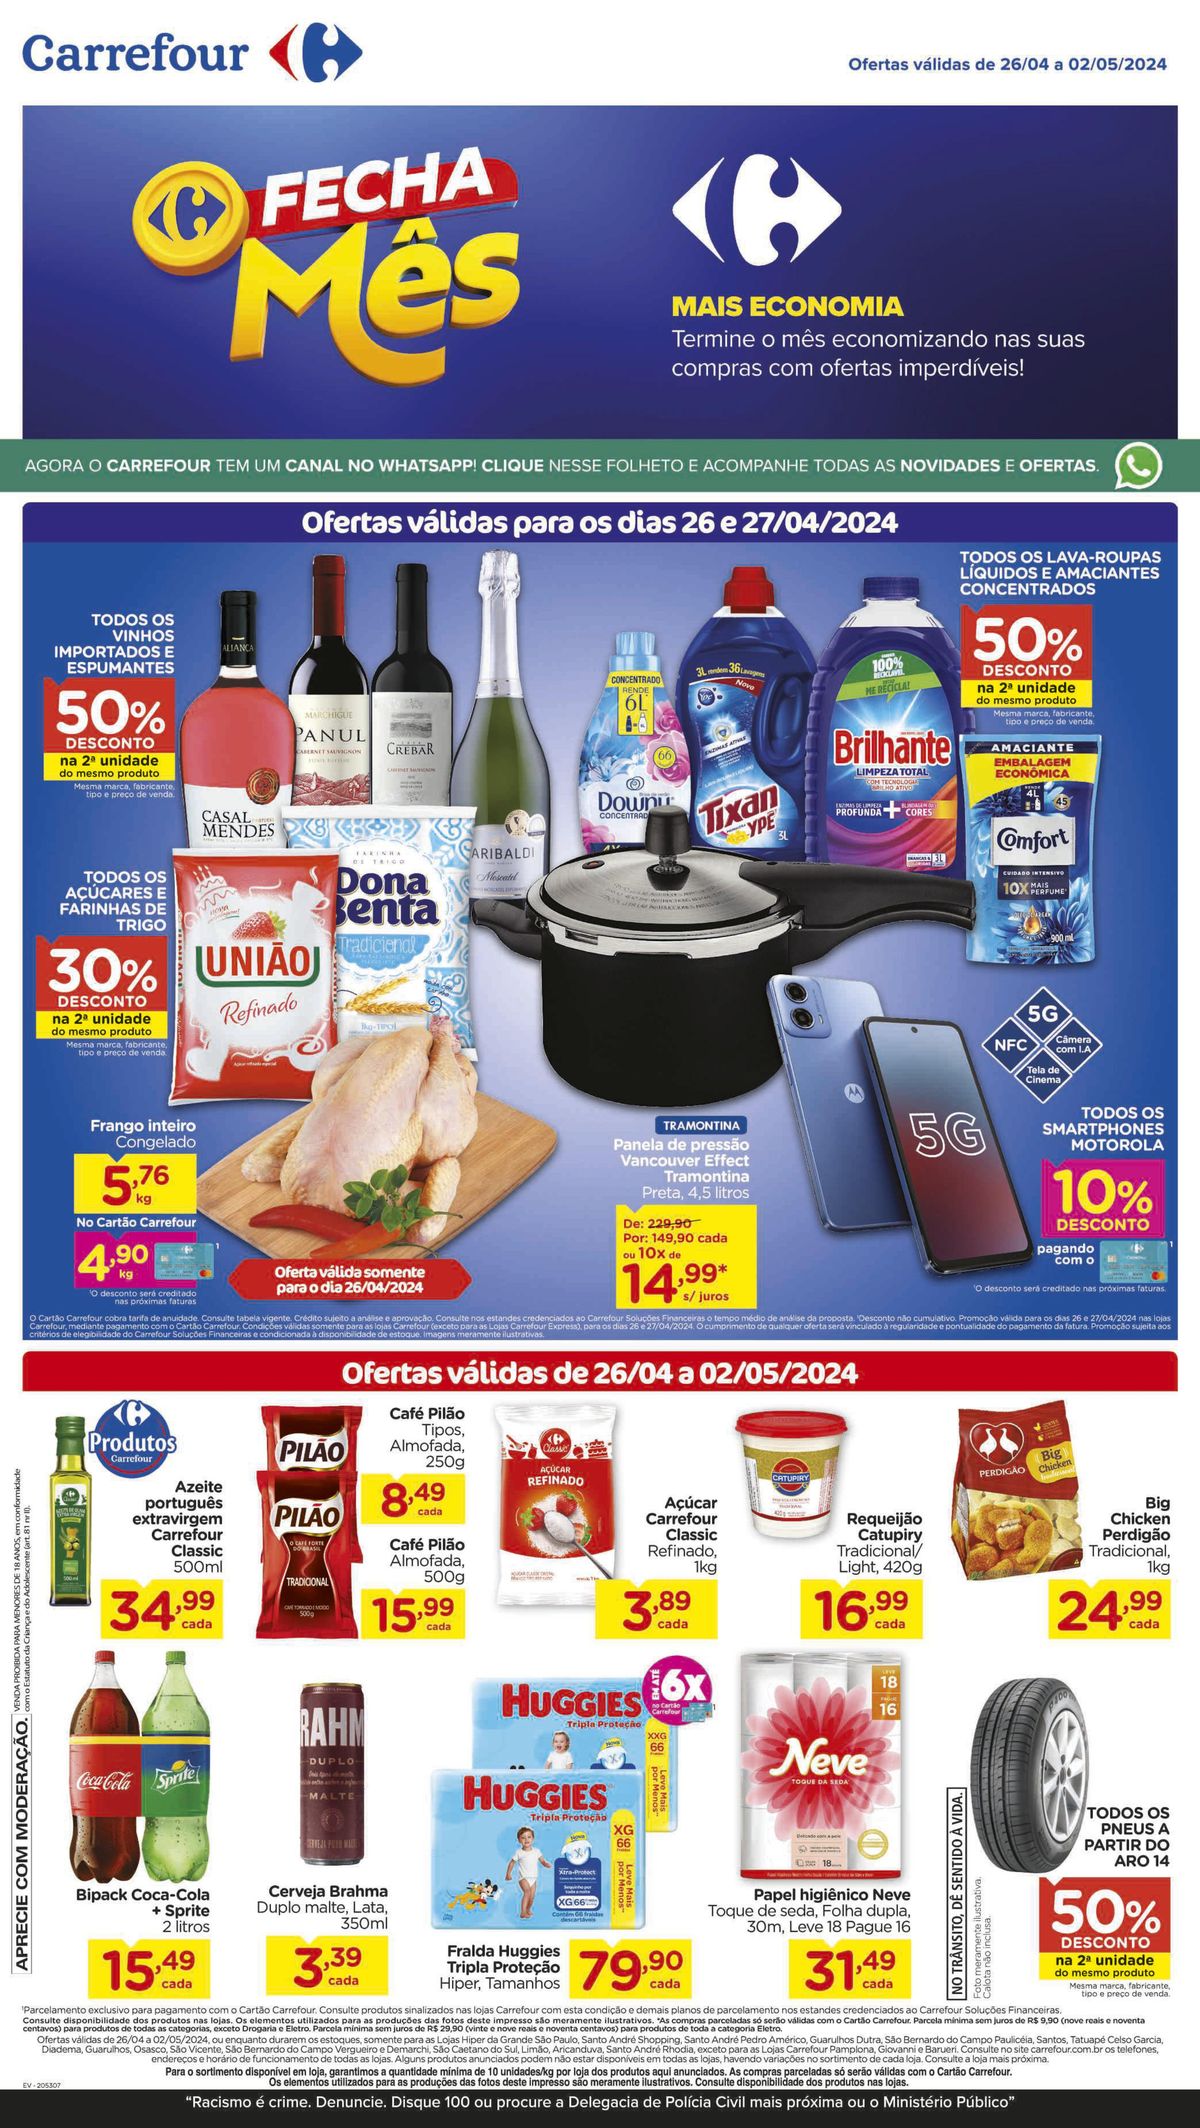 Promoções de supermercado, ABRIL IMBATÍVEL, 02-05-2024, Carrefour